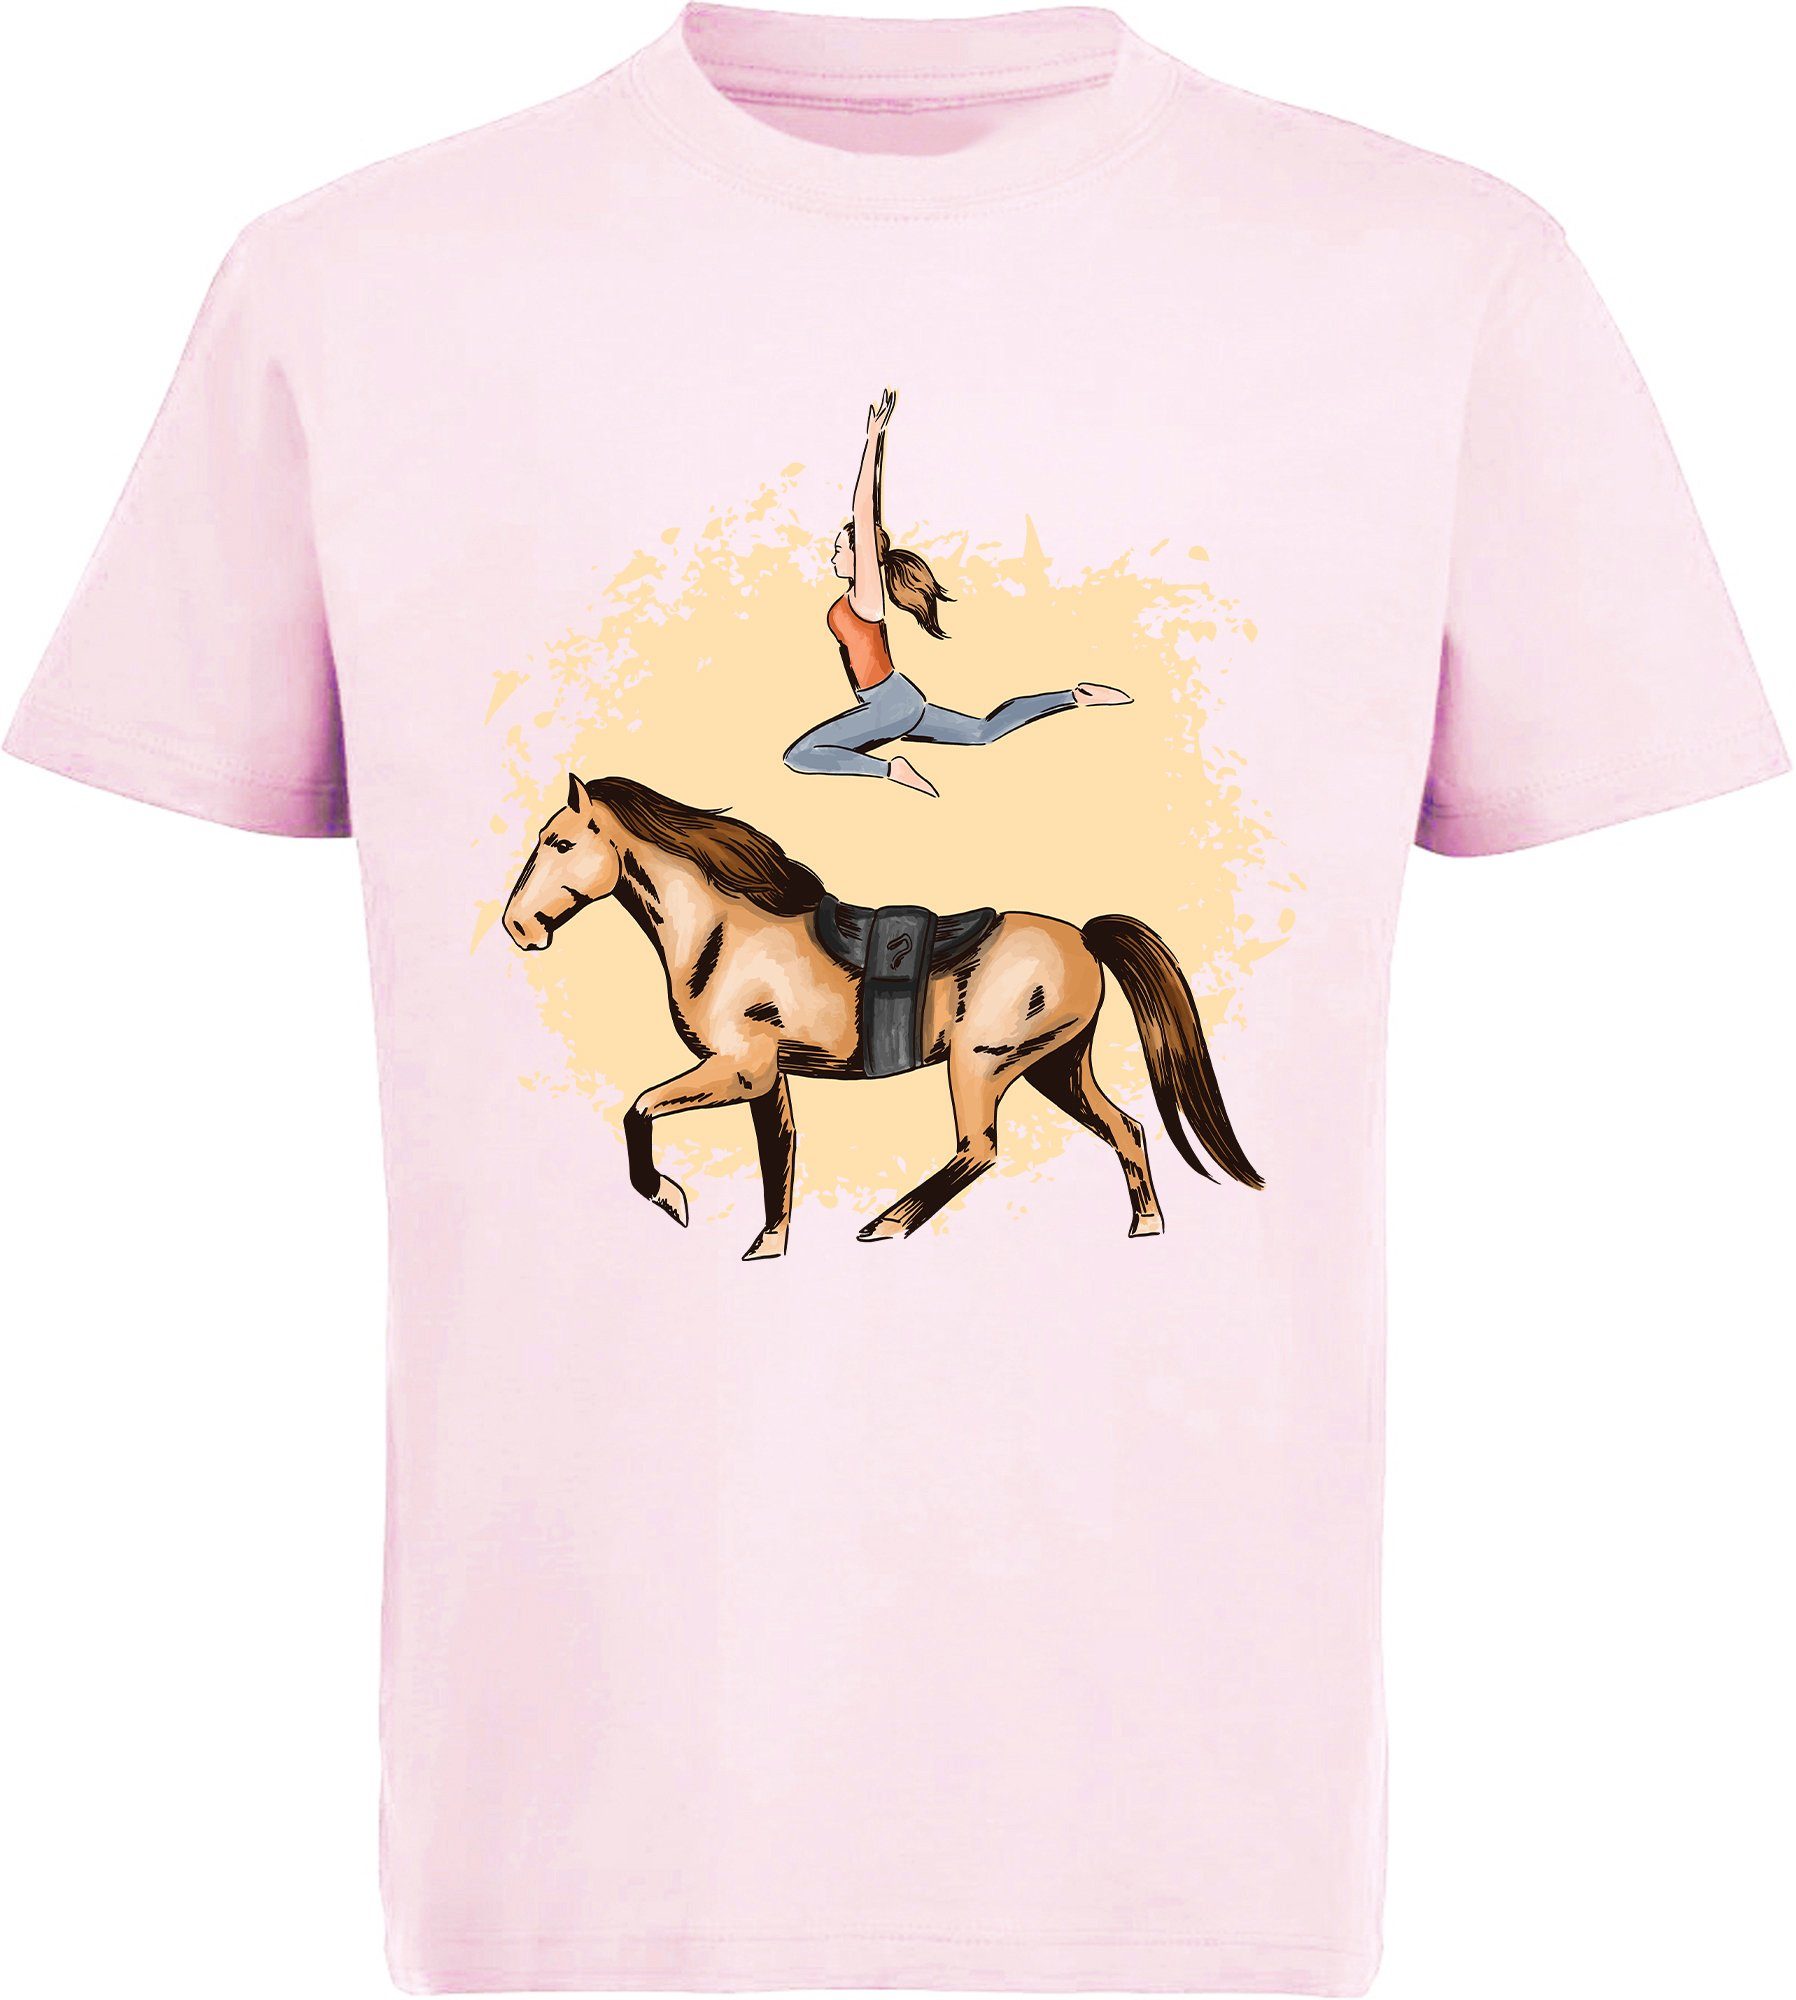 MyDesign24 Print-Shirt bedrucktes Mädchen Pferde T-Shirt mit Turnerin Baumwollshirt mit Aufdruck, i172 rosa